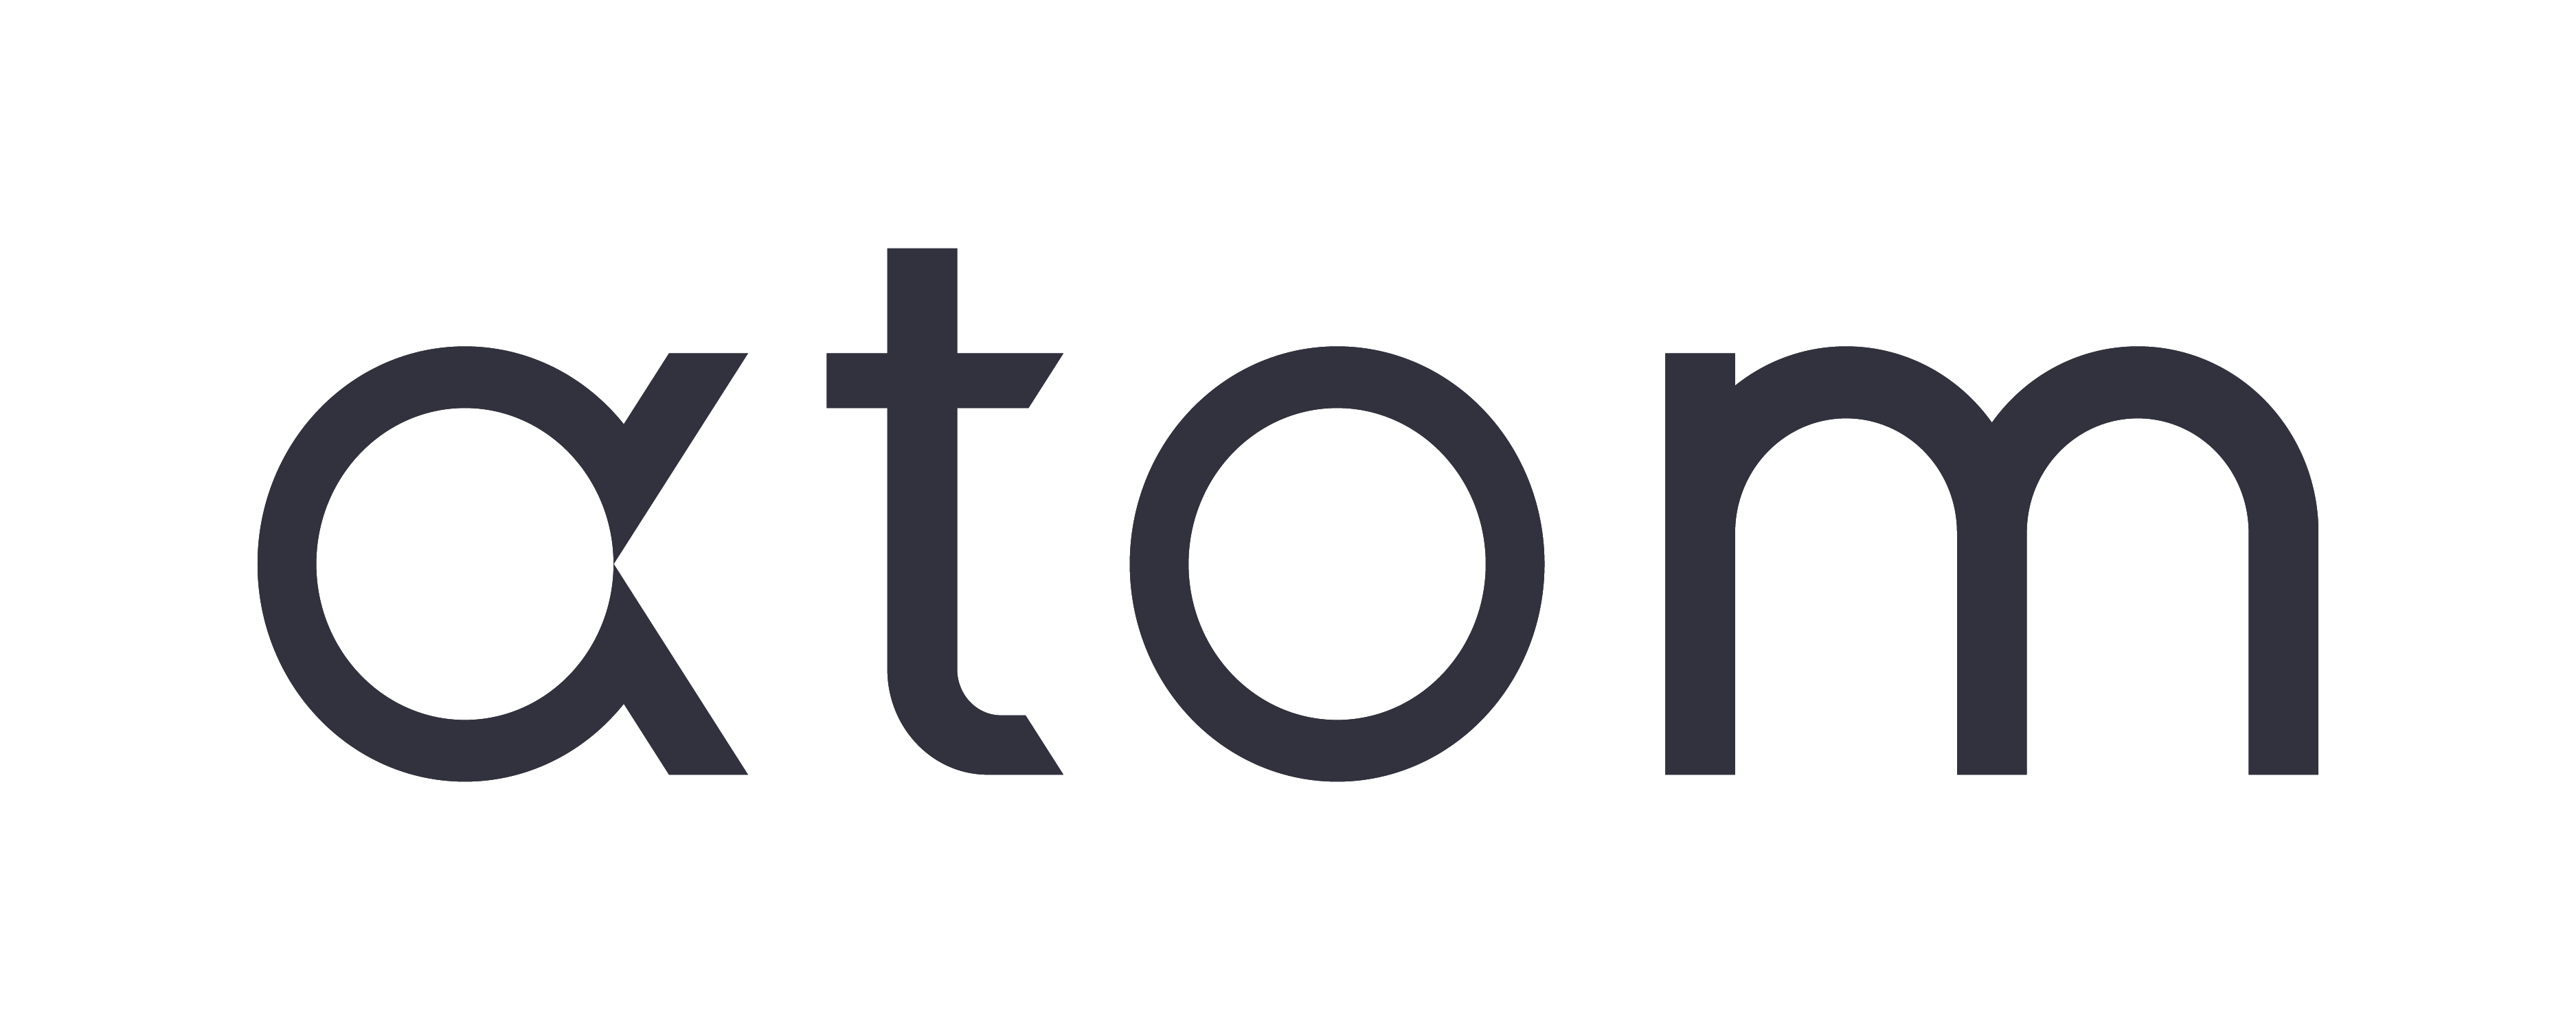 c-stories-logos